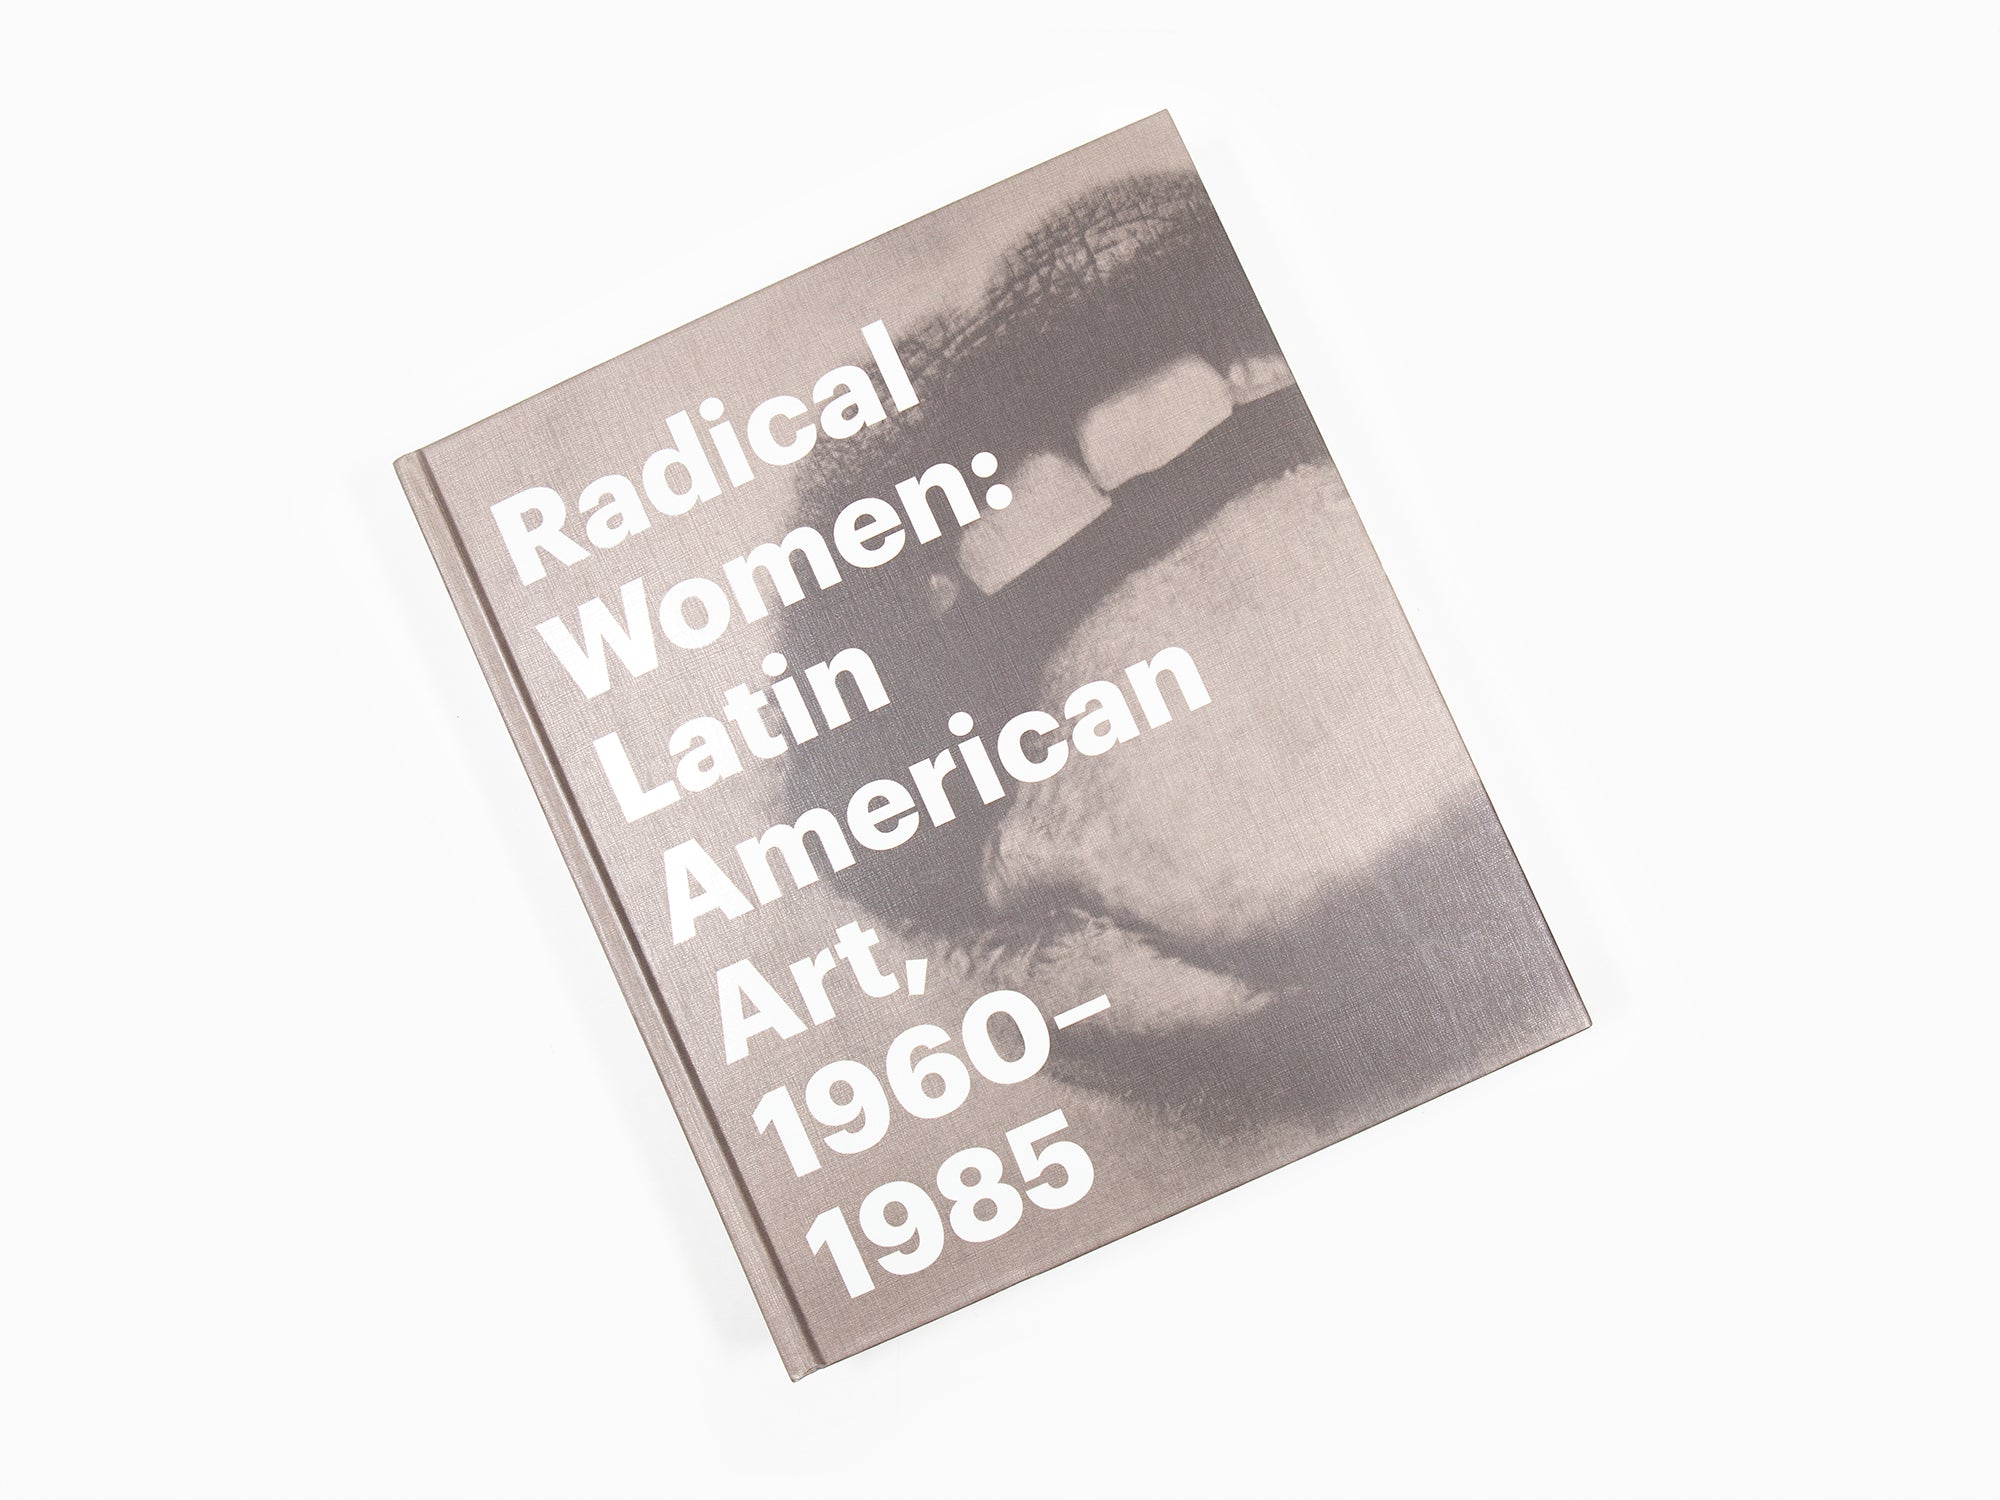 Radical Women latin art, 1960-1985